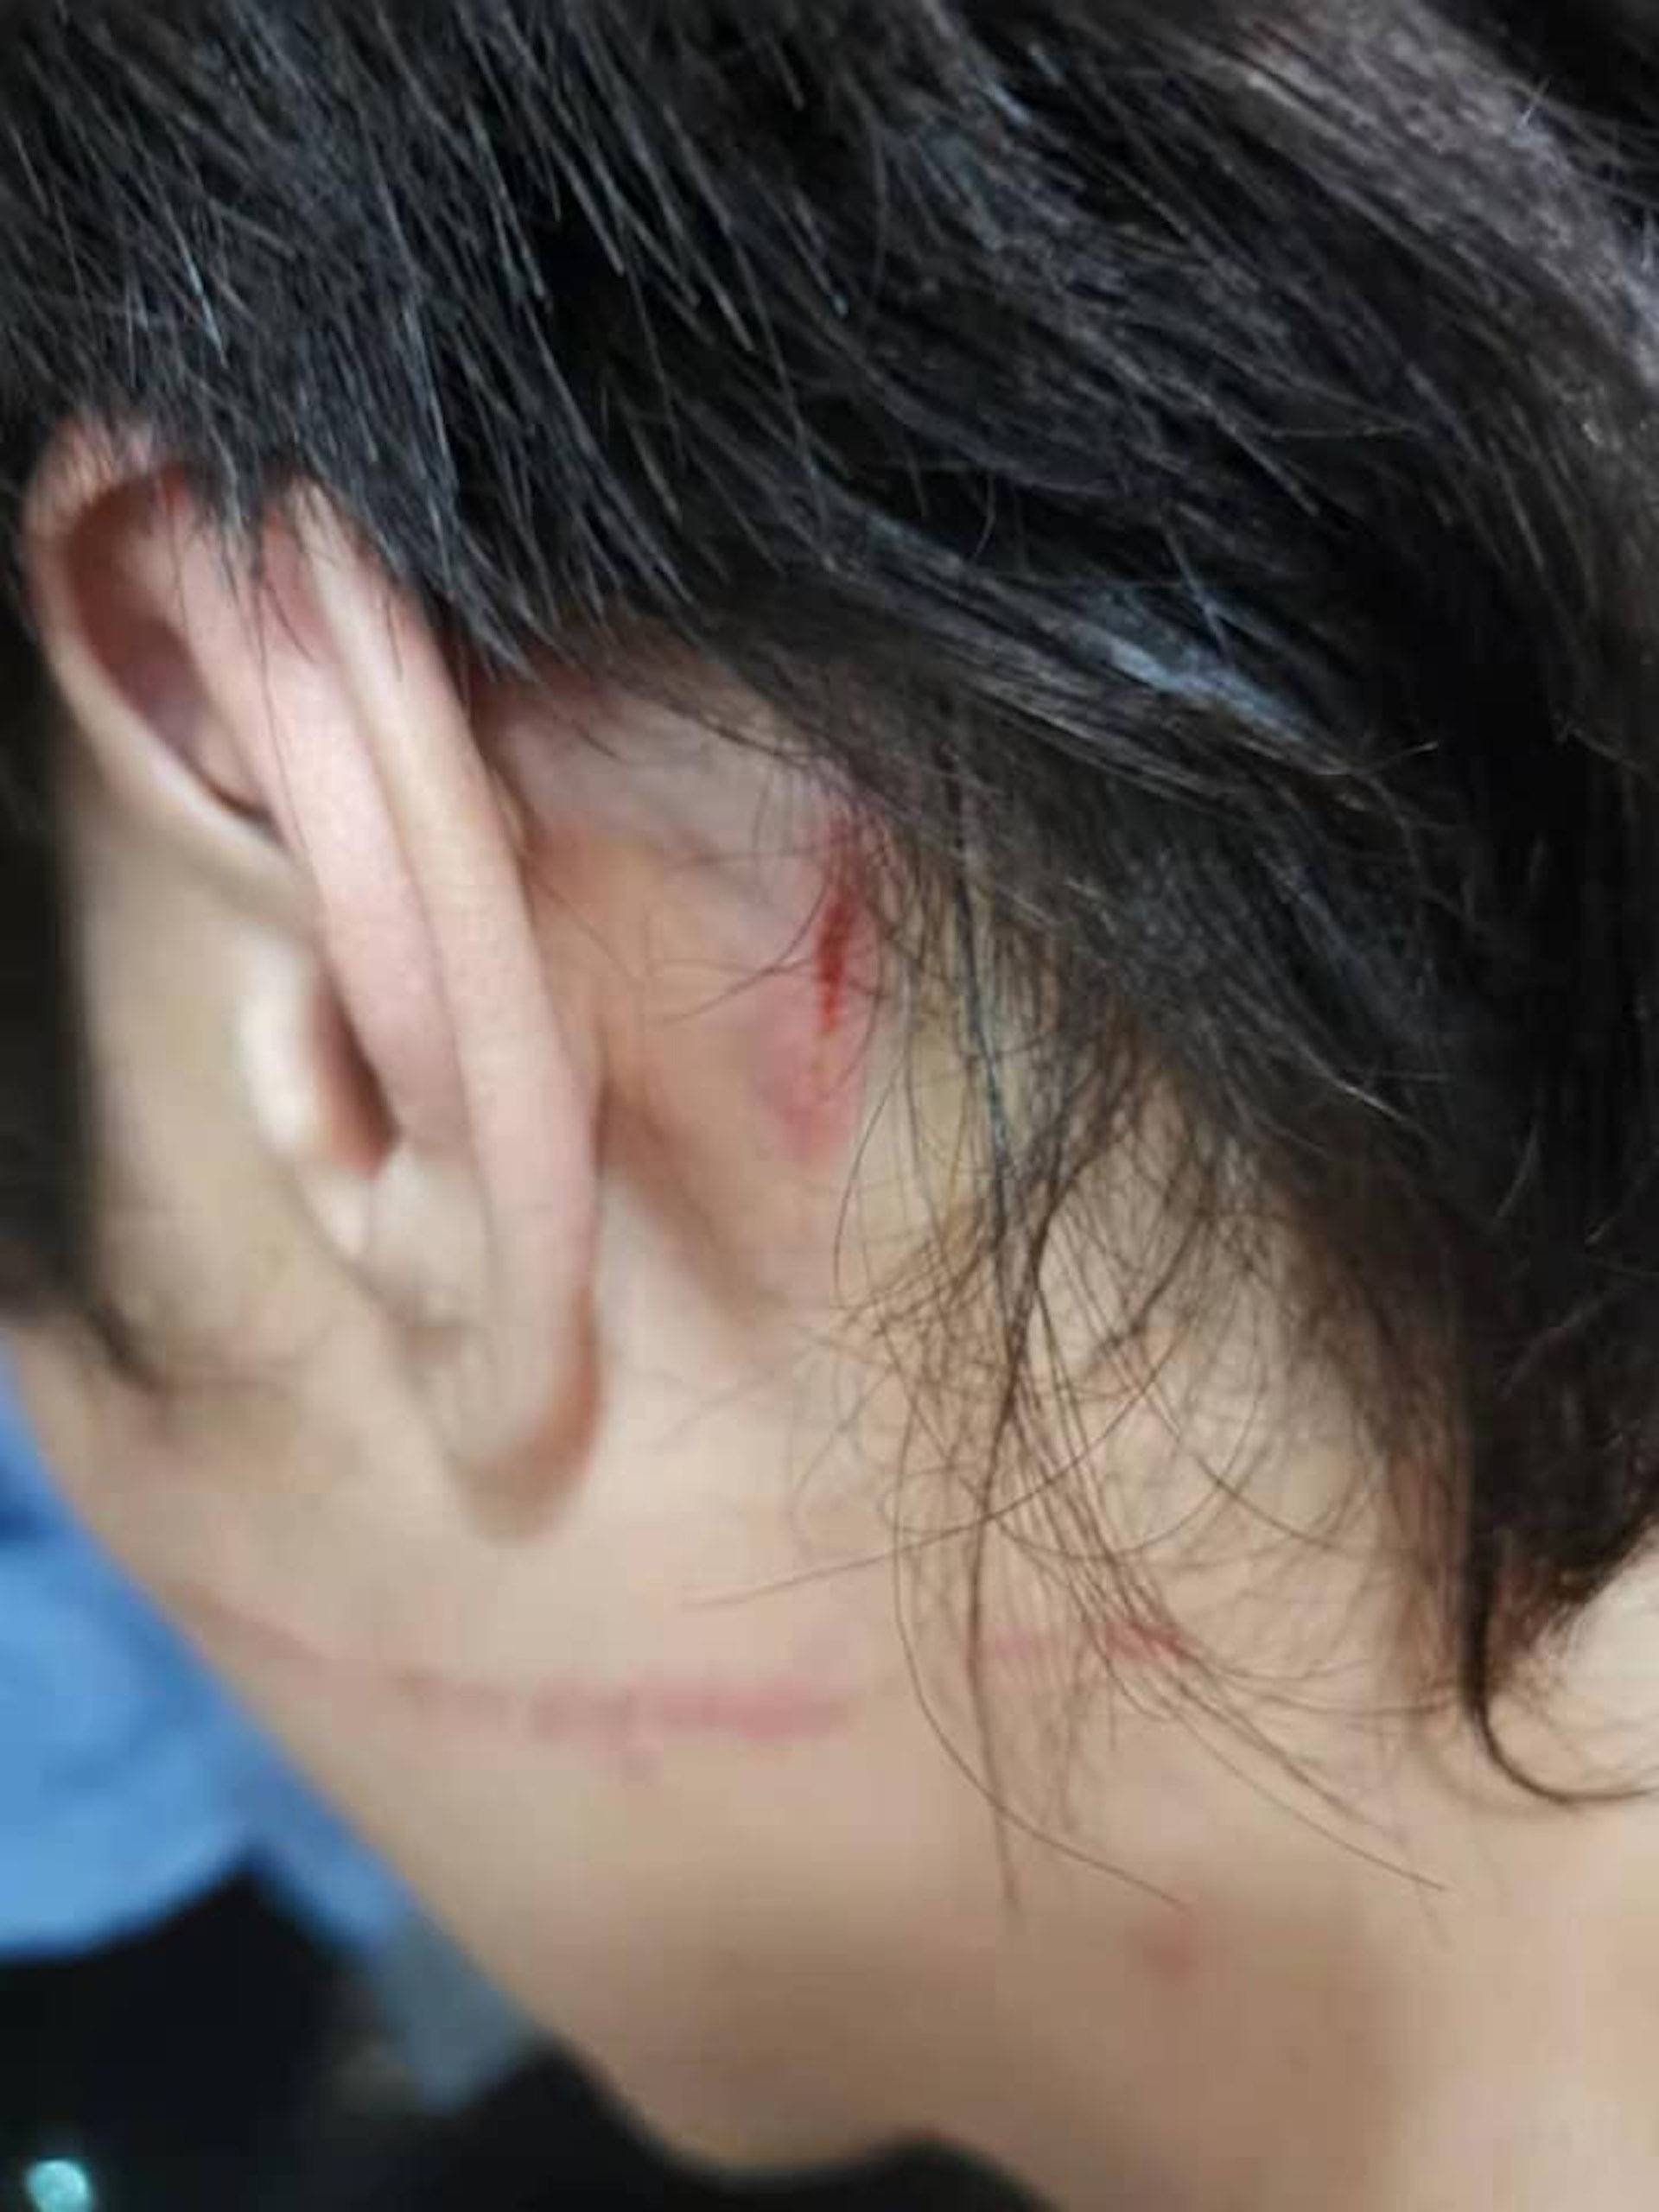 38岁香港歌手被曝遭妻子家暴,头部受伤见血,曾家暴前妻不获同情